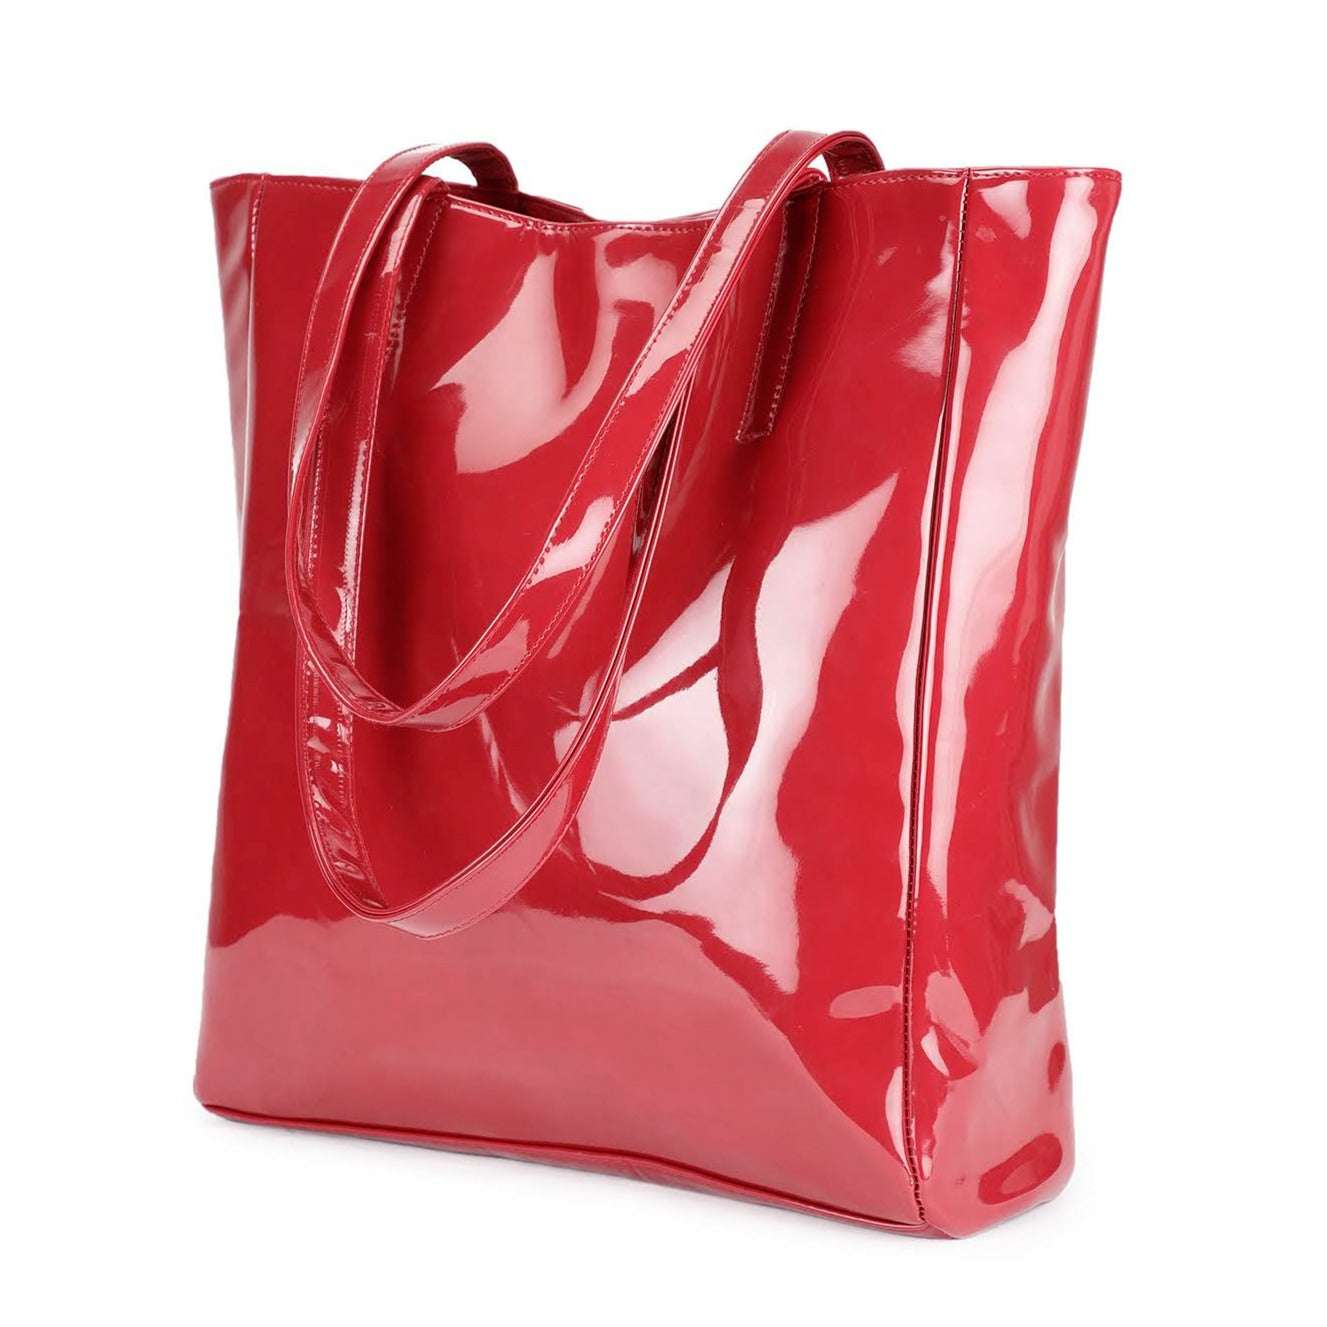 Chic Tote oversized Handbag - Cherry Red